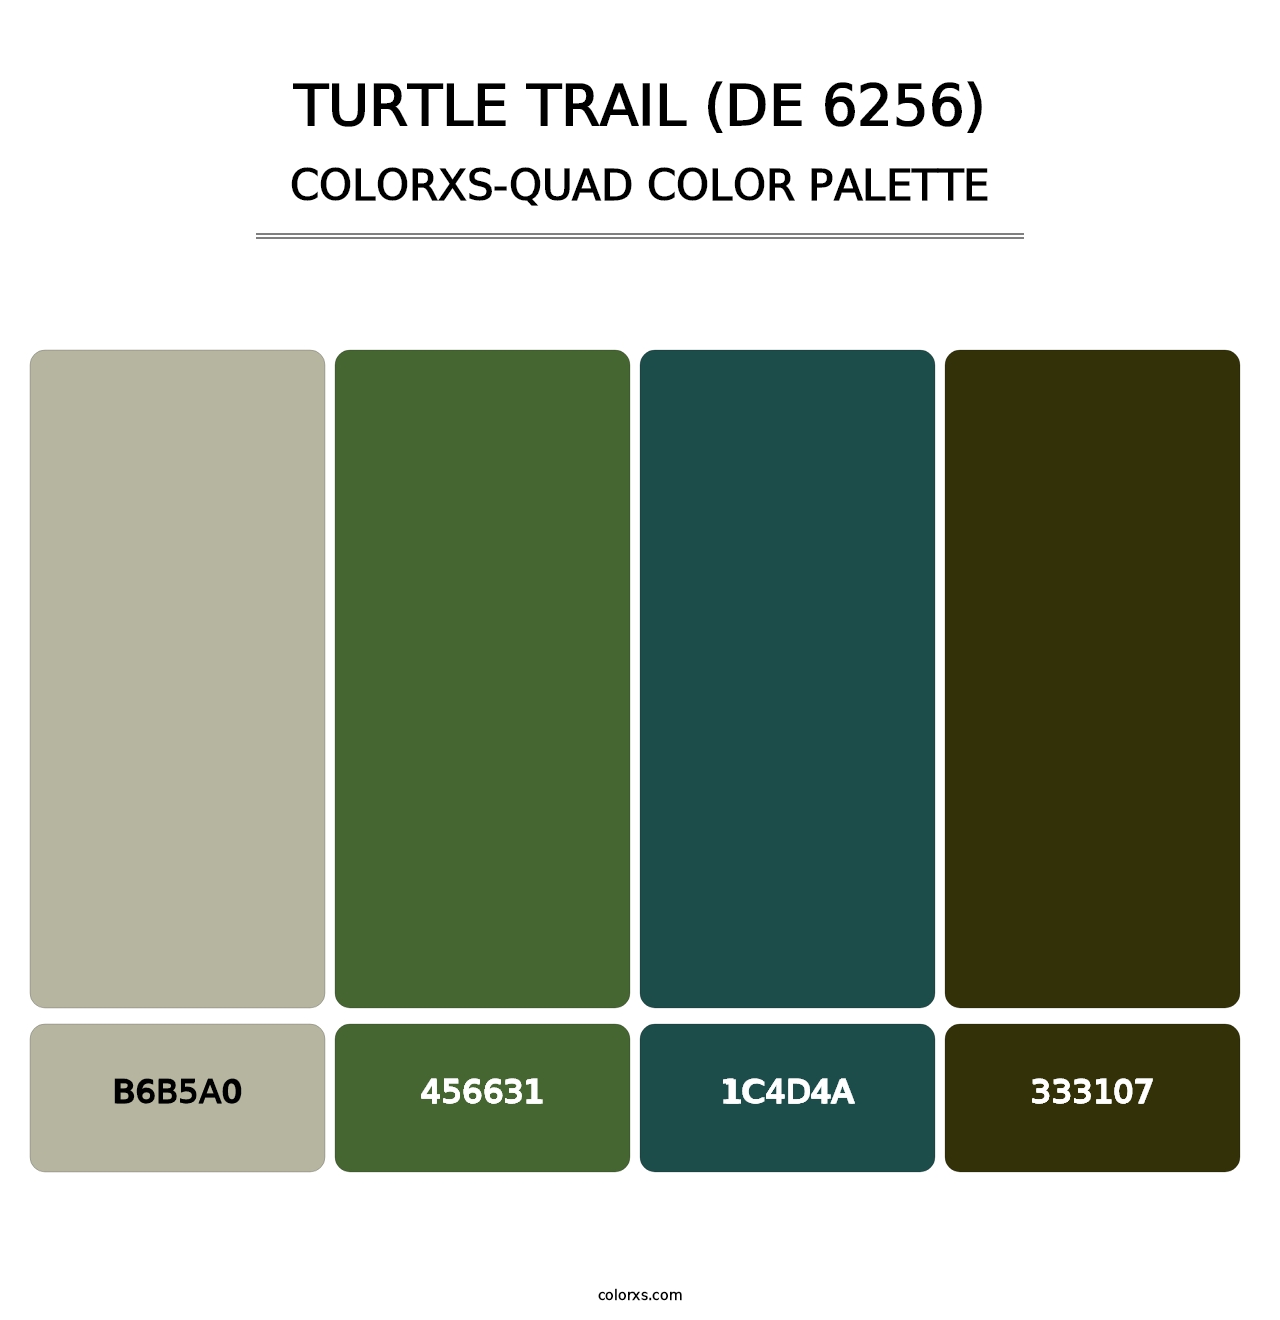 Turtle Trail (DE 6256) - Colorxs Quad Palette